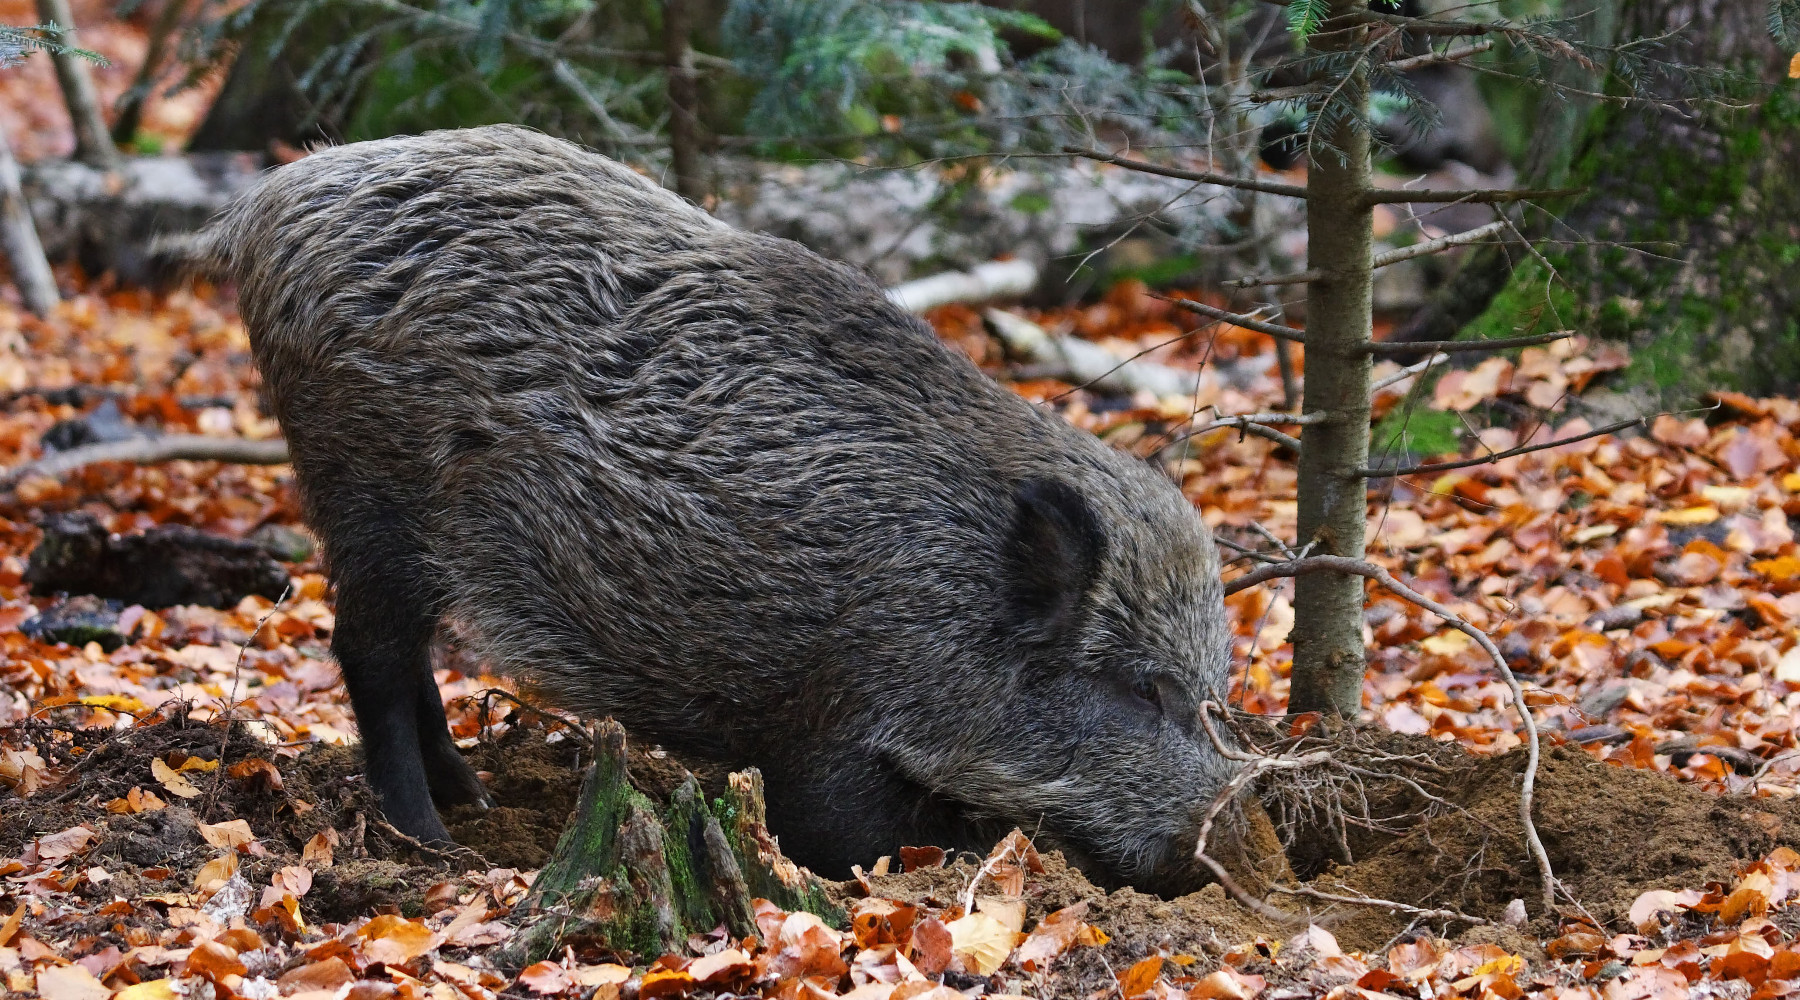 Approvato il regolamento sulla caccia in Toscana: cinghiale in ambiente autunnale